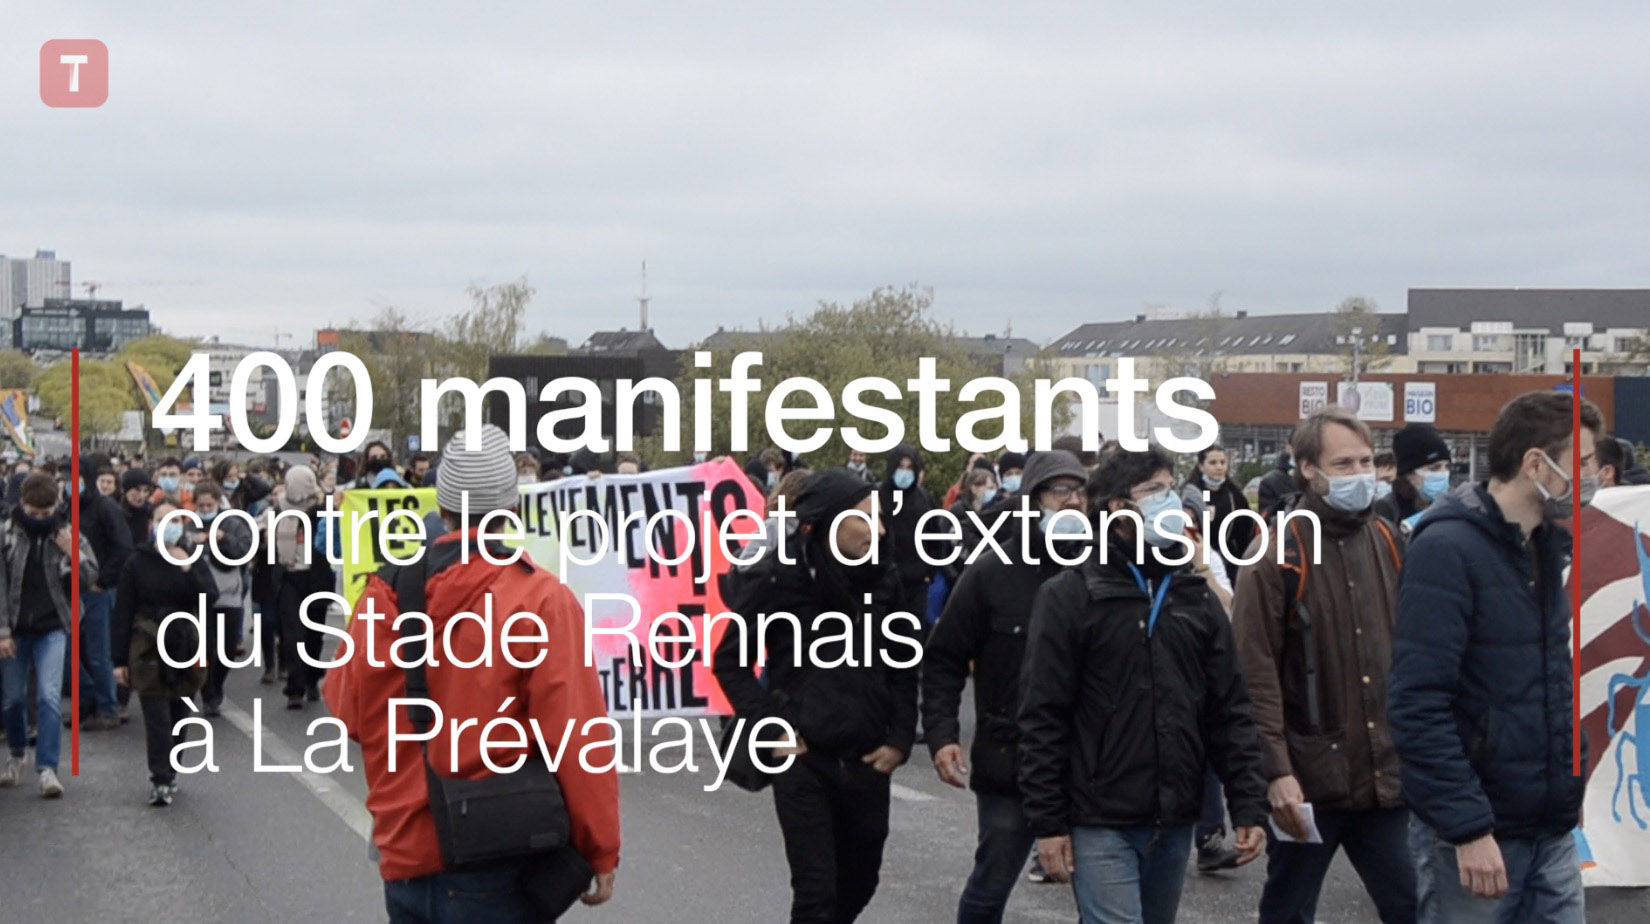 400 manifestants contre le projet d’extension du Stade Rennais à La Prévalaye (Le Télégramme)